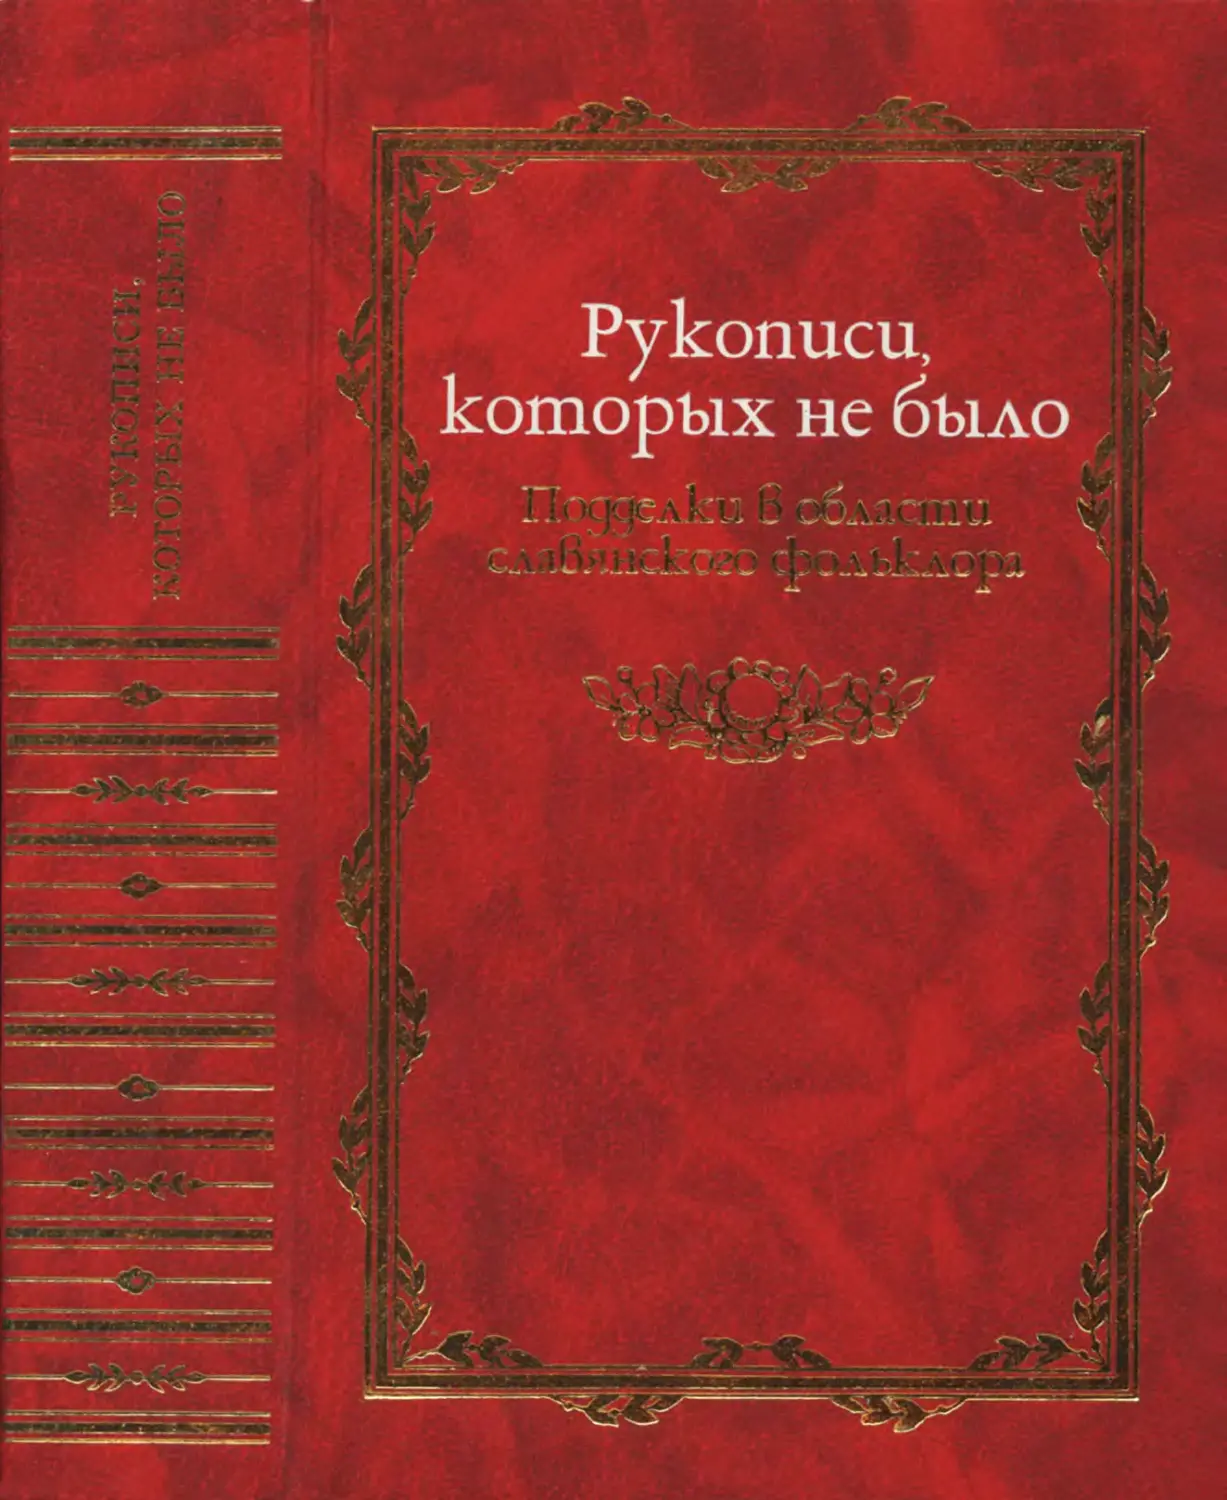 Рукописи, которых не было: Подделки в области славянского фольклора - 2002